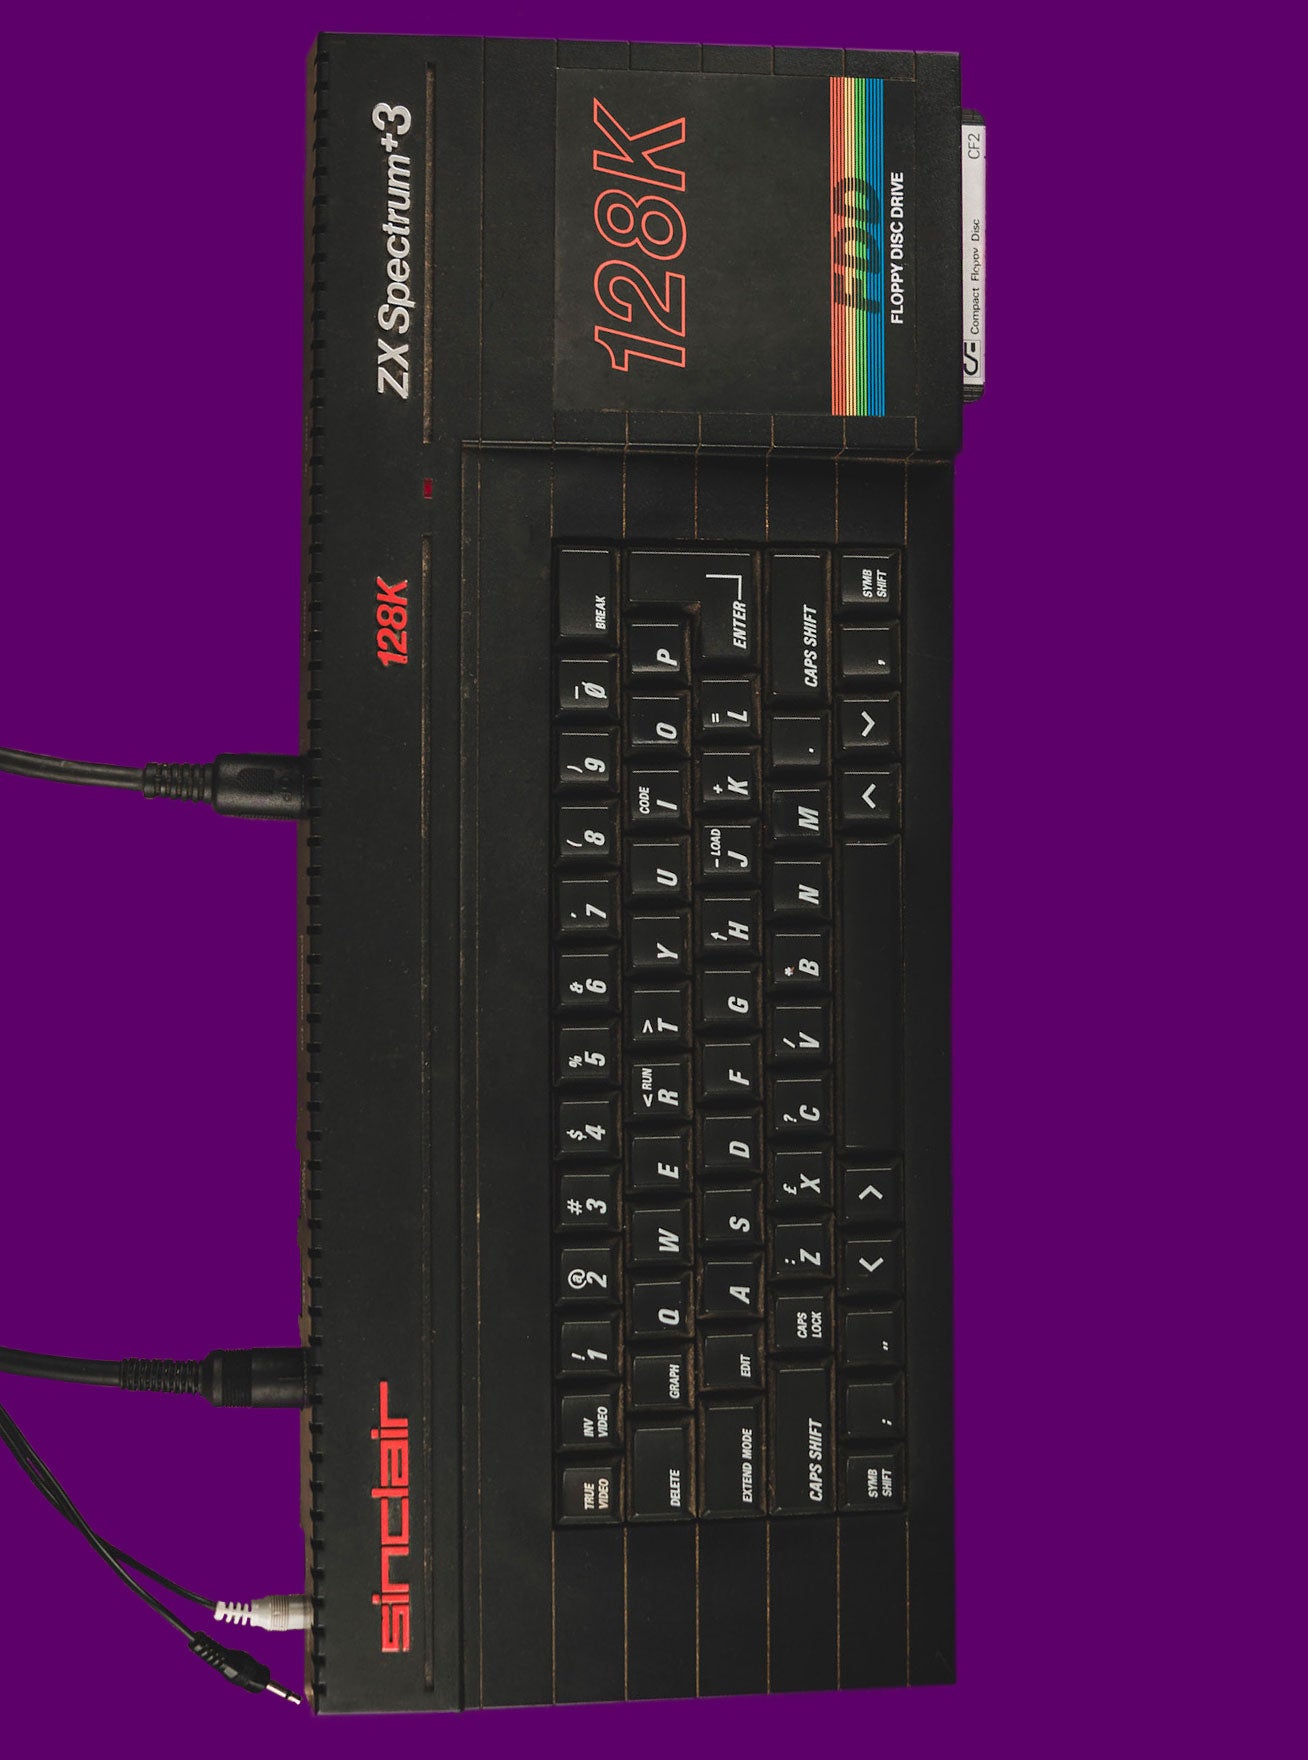 ZX Spectrum UDS